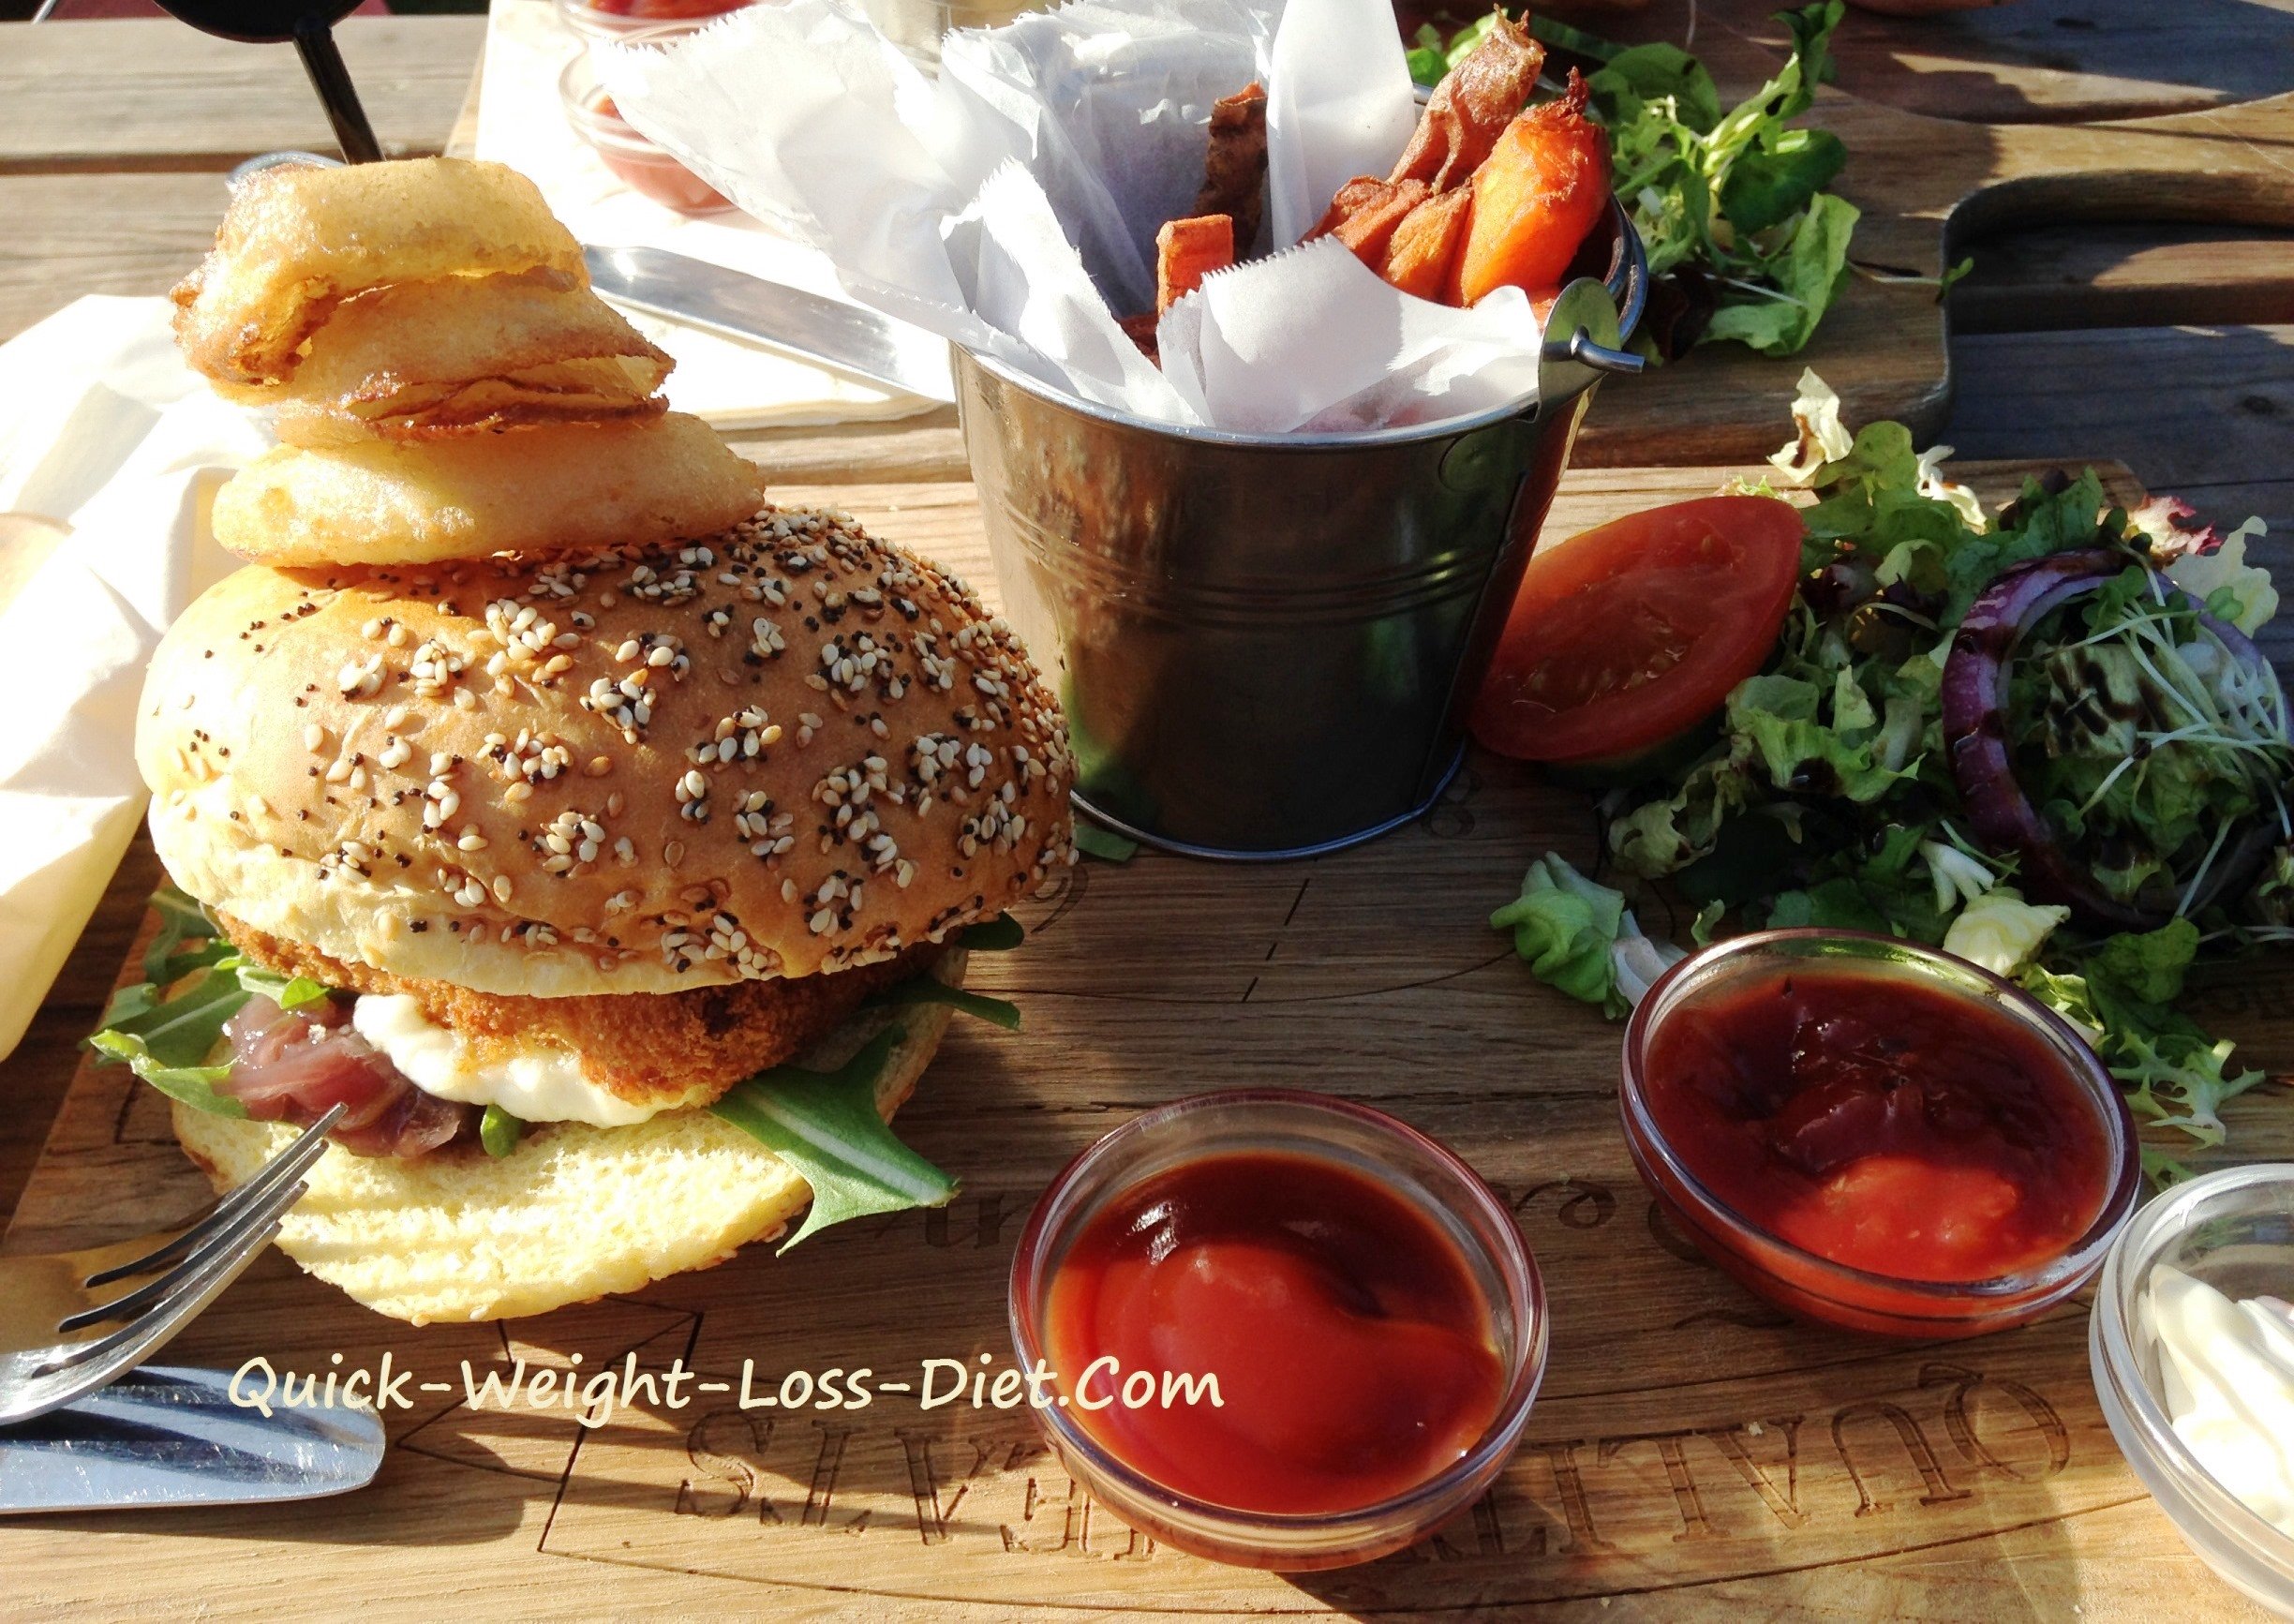 halloumi_burger_with_fries_salad